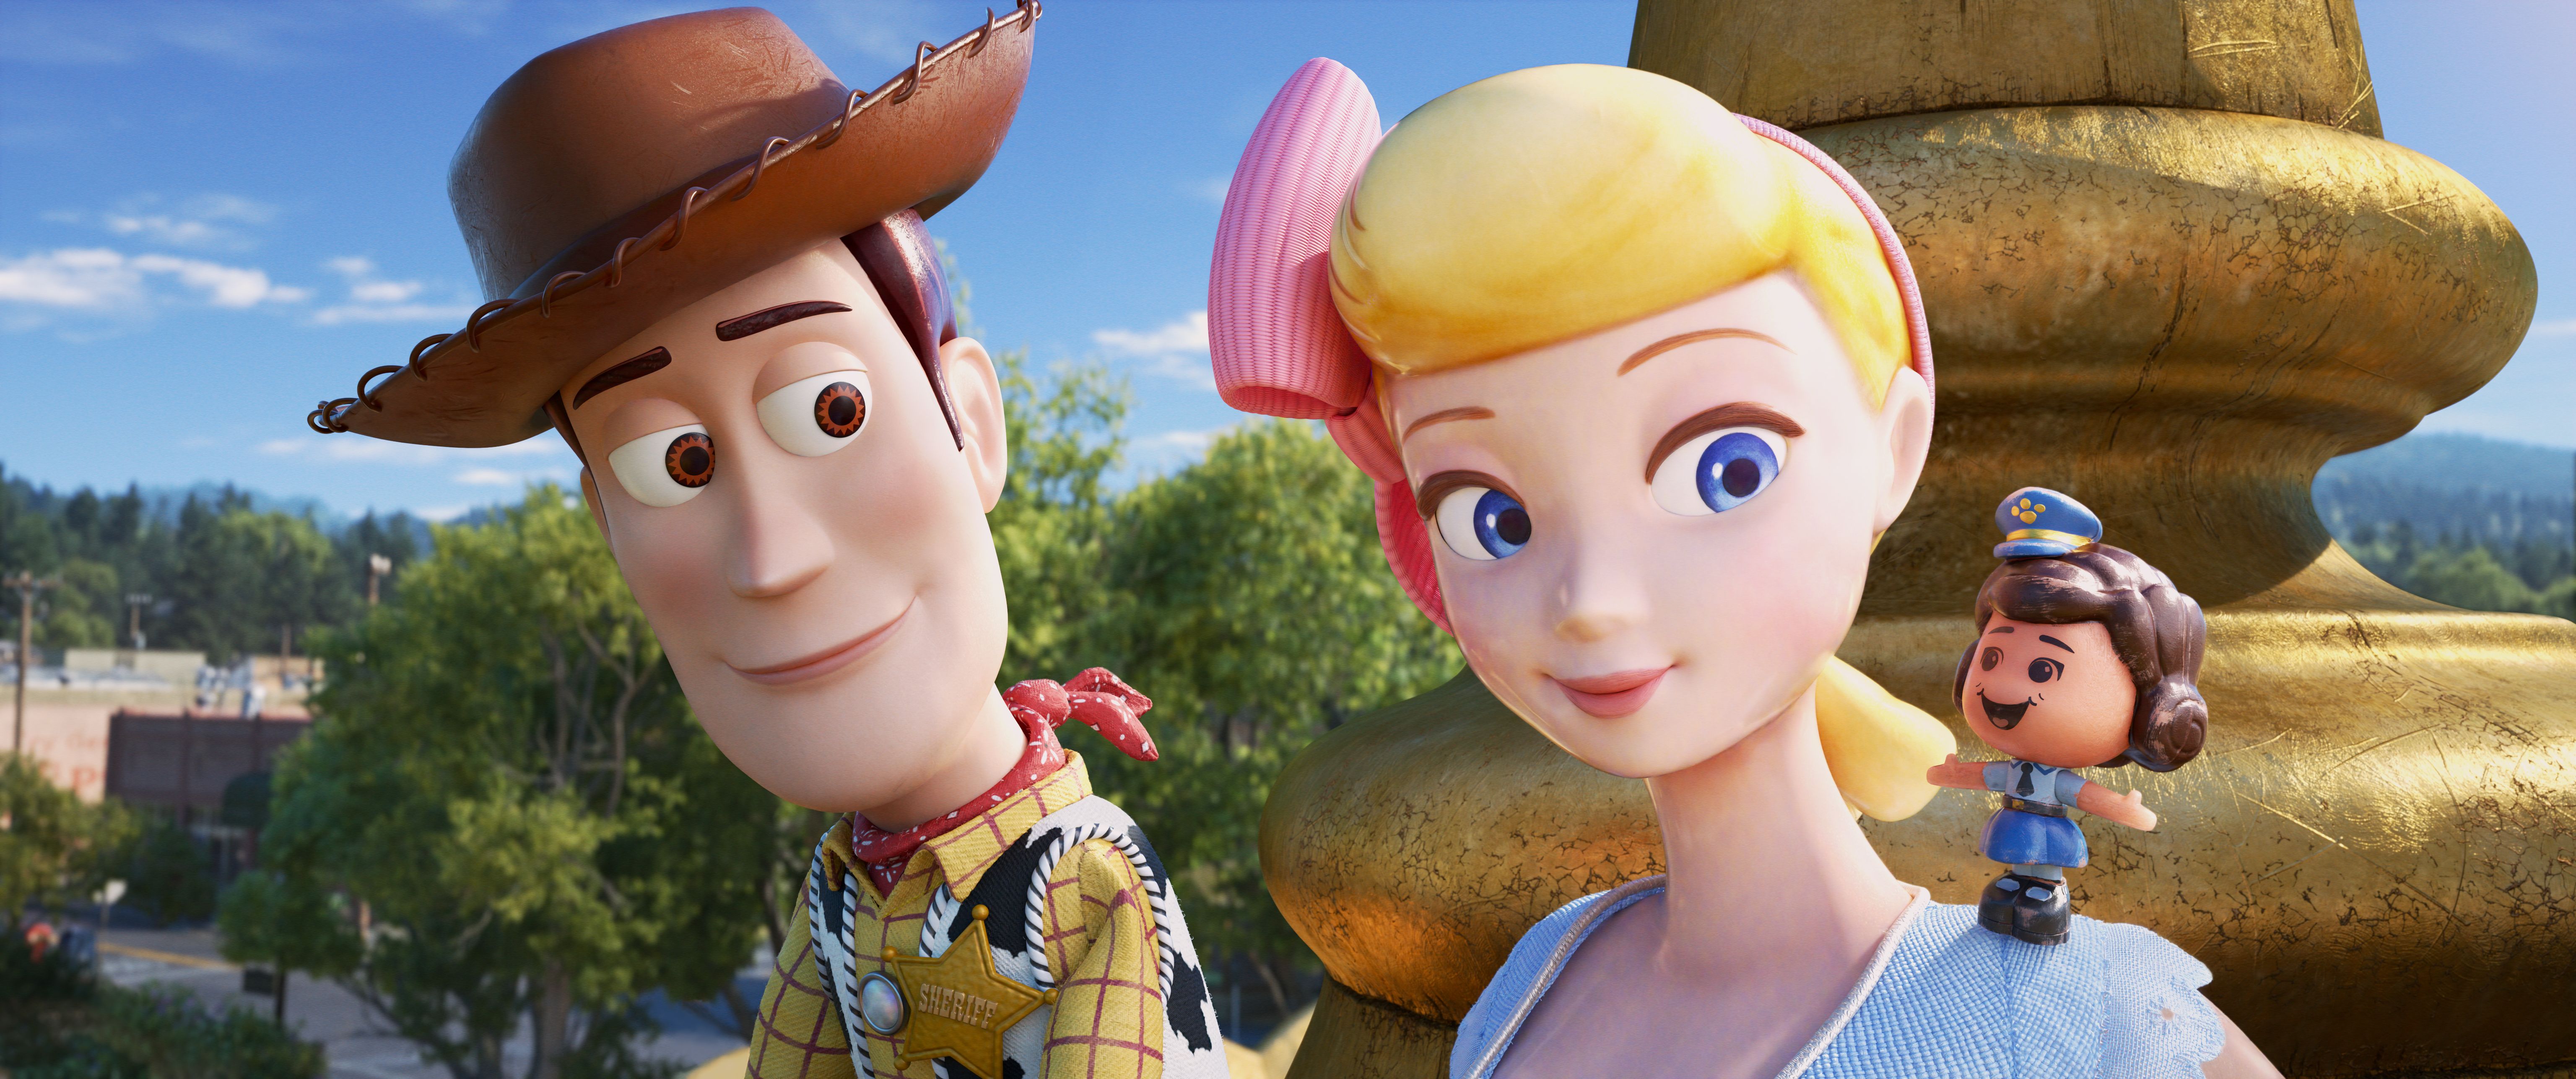 Klassifika Definittiva tal-Erba 'Films' Toy Story 'Kollha